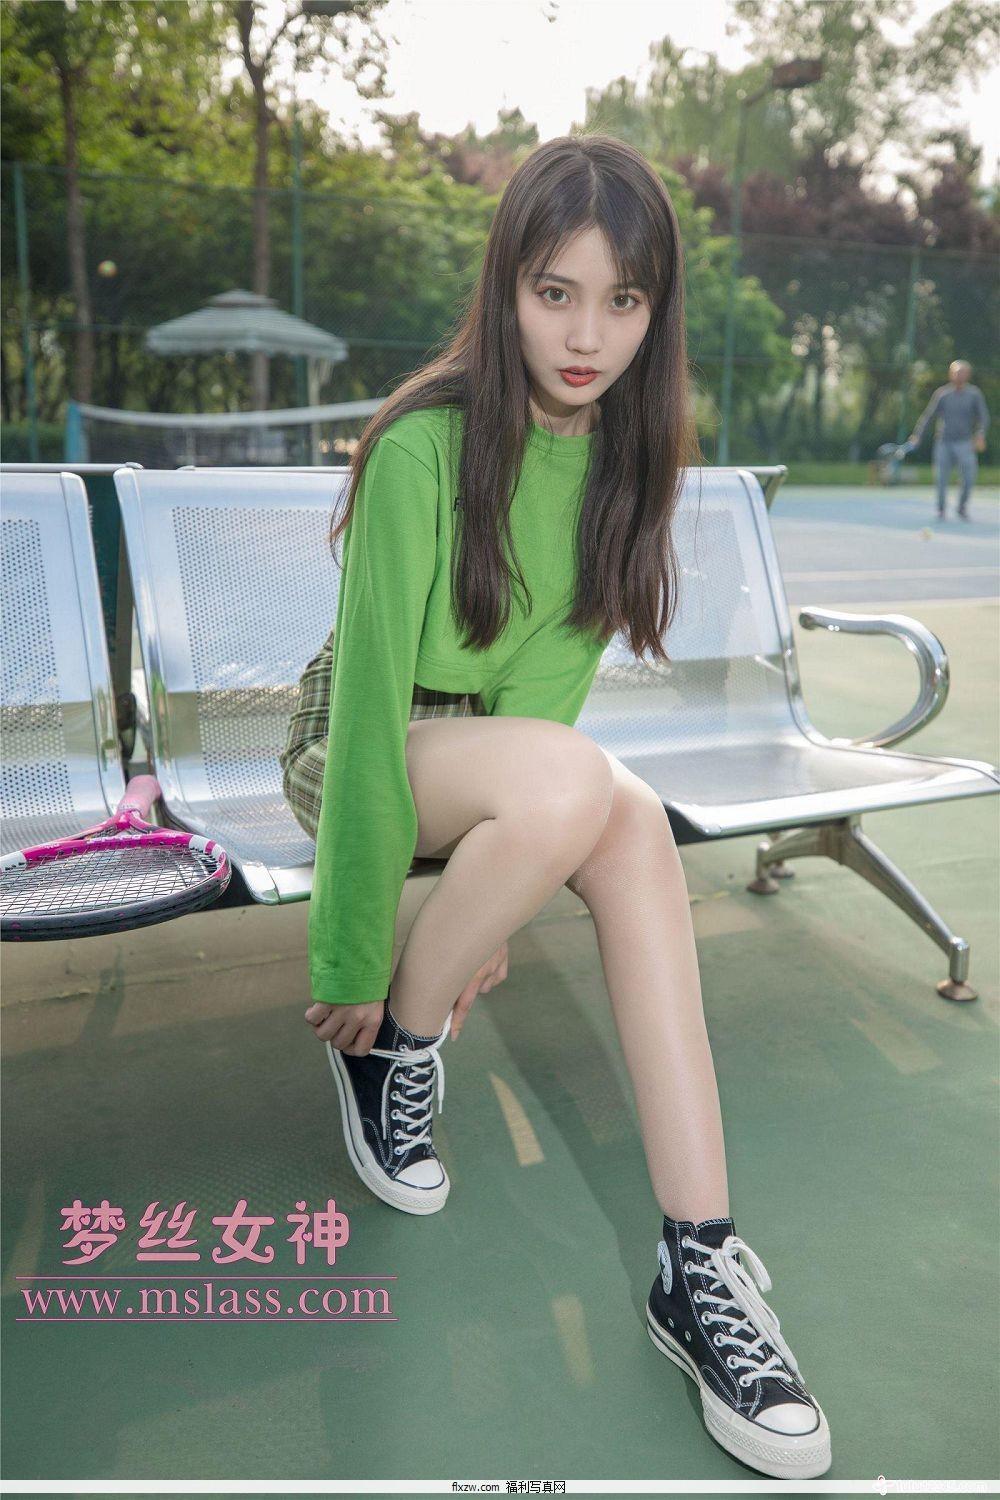 梦丝女神MSLASS - 香萱 网球少女(15)